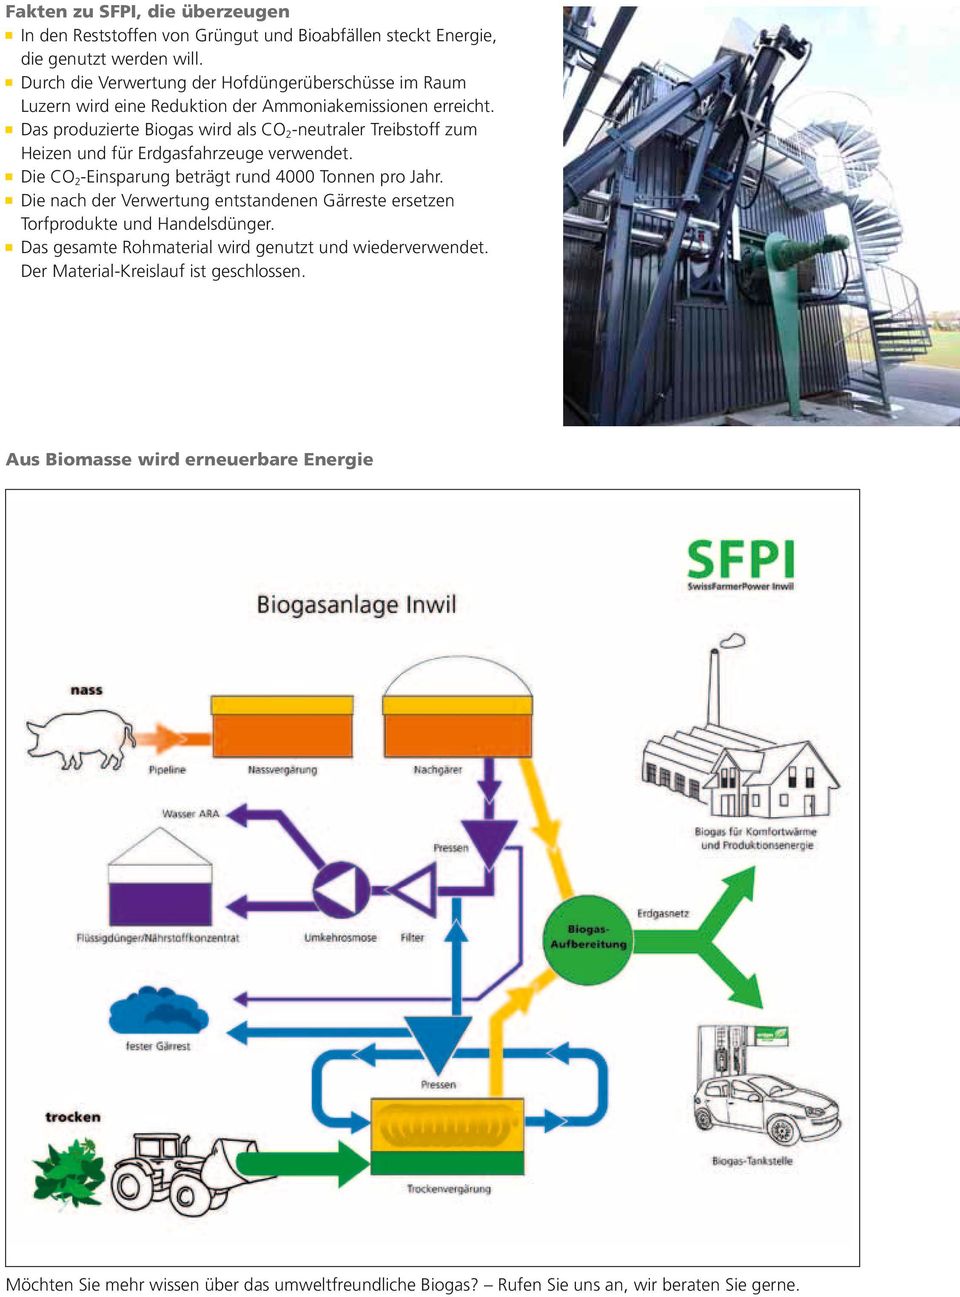 Das produzierte Biogas wird als CO2-neutraler Treibstoff zum Heizen und für Erdgasfahrzeuge verwendet. Die CO2-Einsparung beträgt rund 4000 Tonnen pro Jahr.